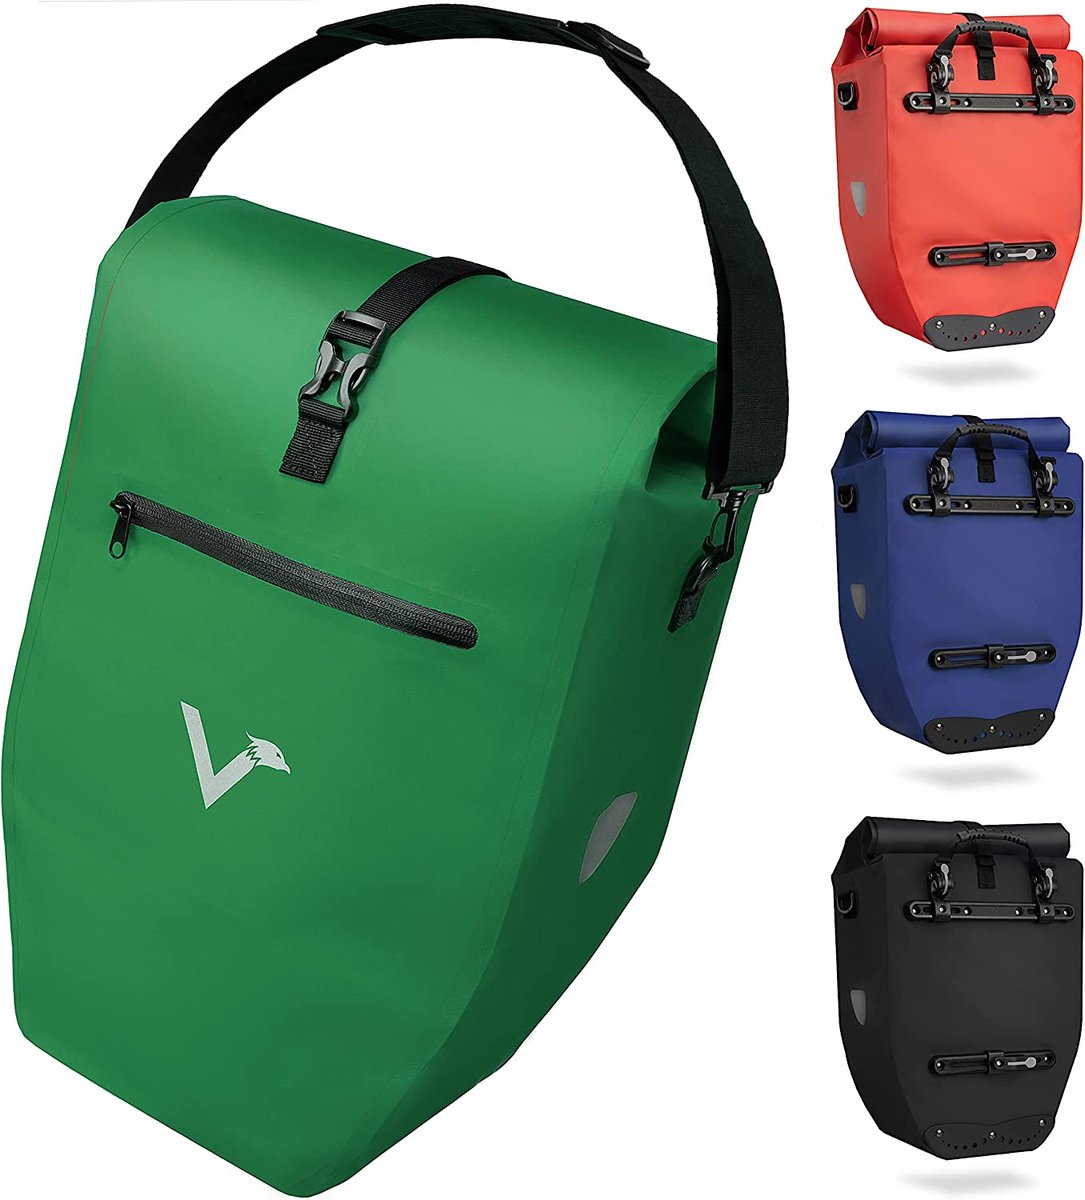 Valkental - ValkBasic 28L - Groen - Grote en waterdichte bagagedragertas - 28 liter vulvolume - fietstas voor bagagedrager met reflectoren in groen